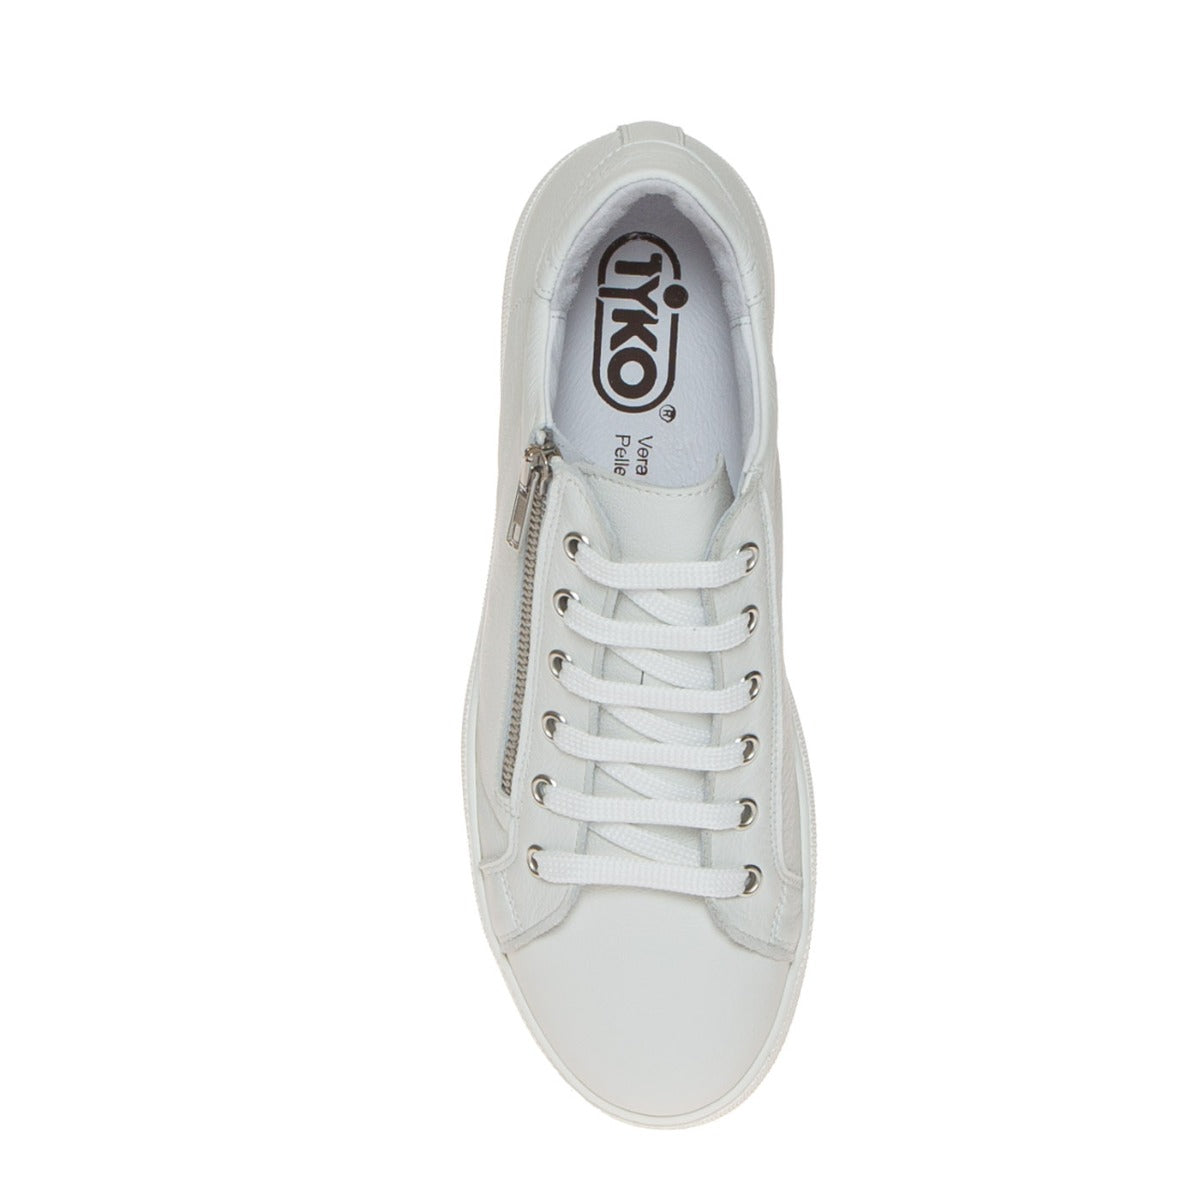 tyko-18022-sneaker-donna-bianco-zip